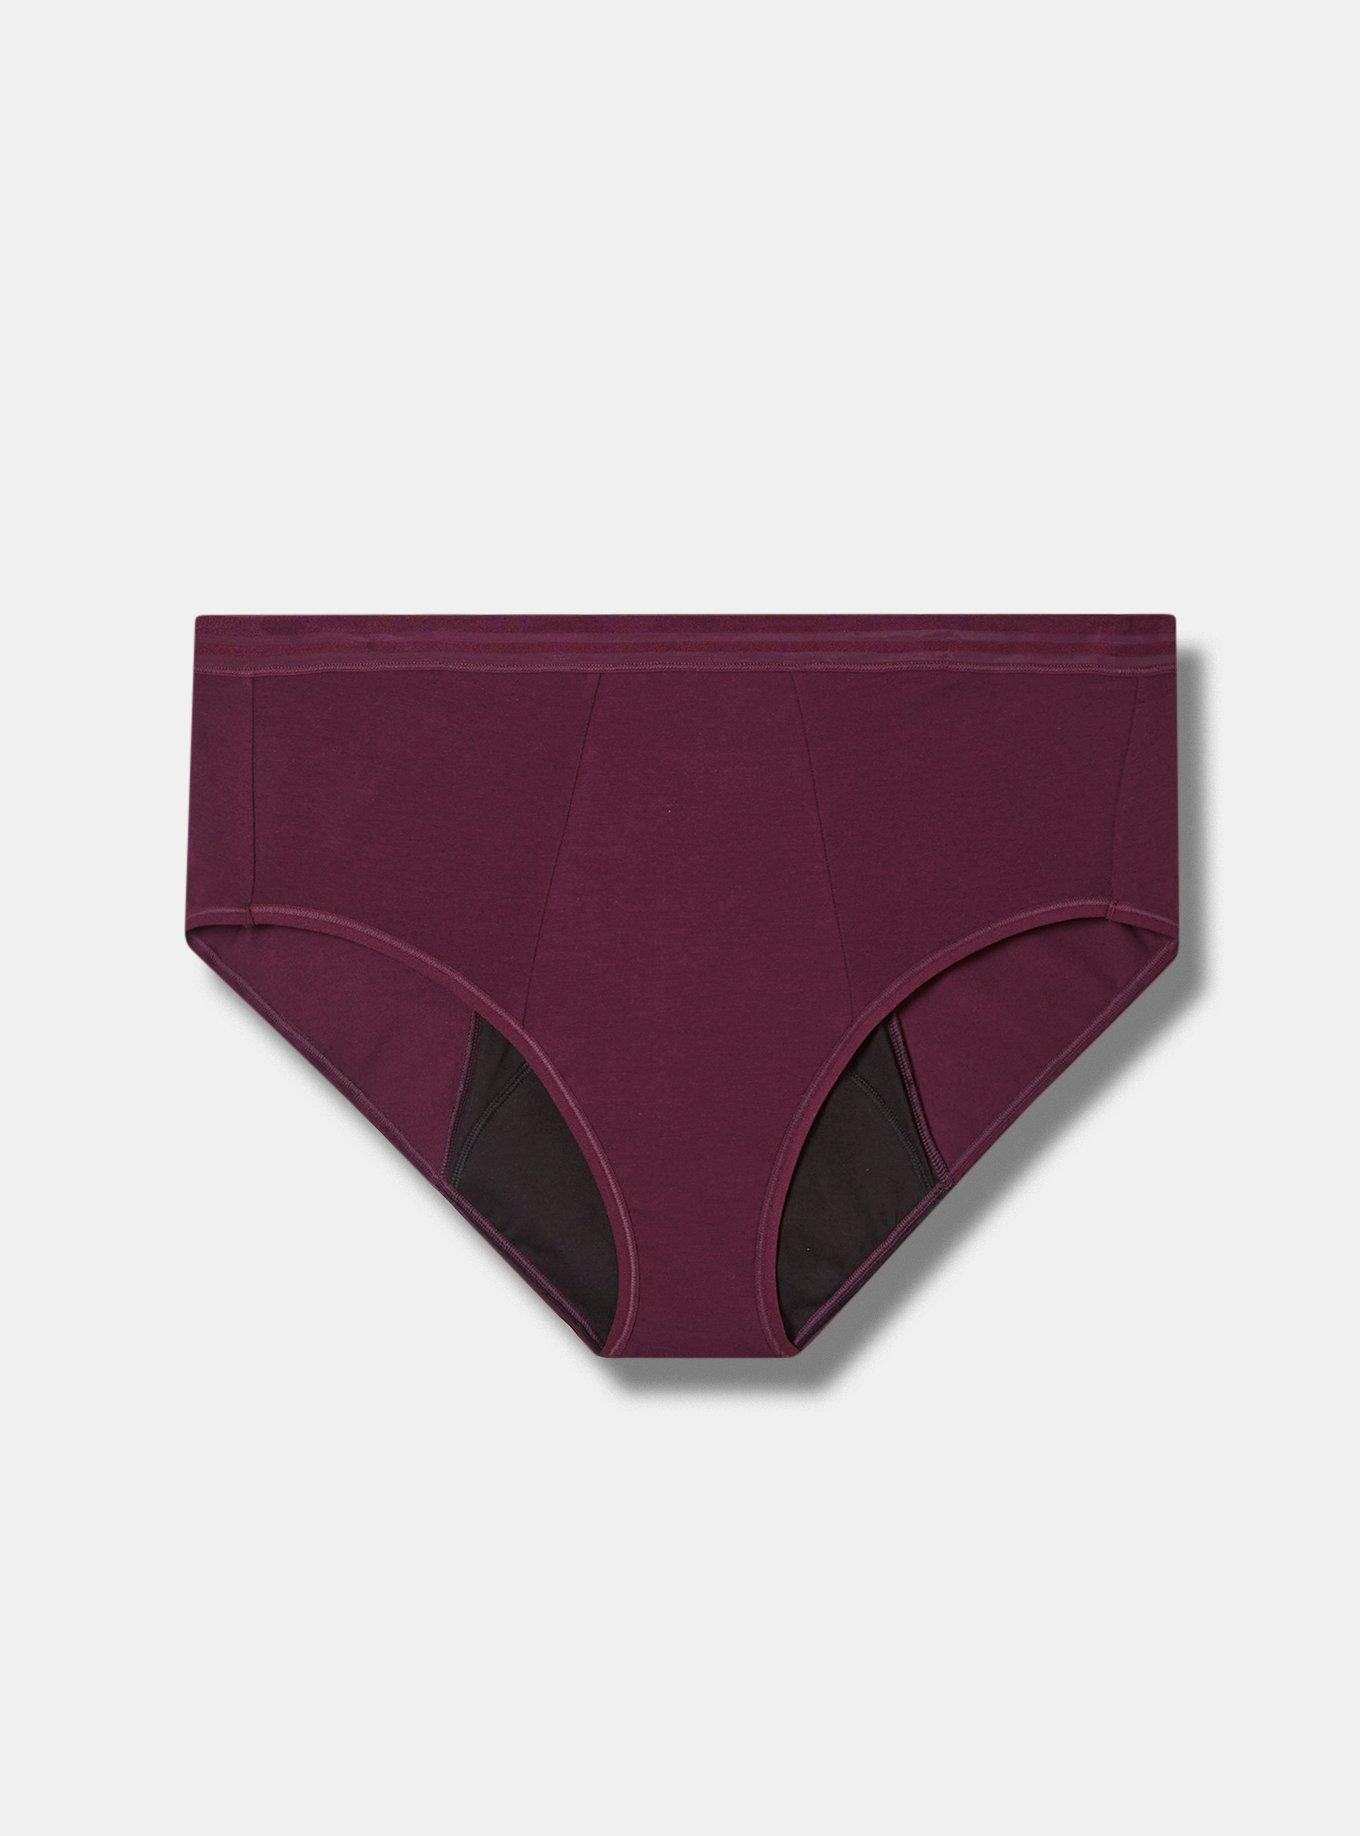 READY STOCK]Women's menstrual period leak-proof underwear sexy